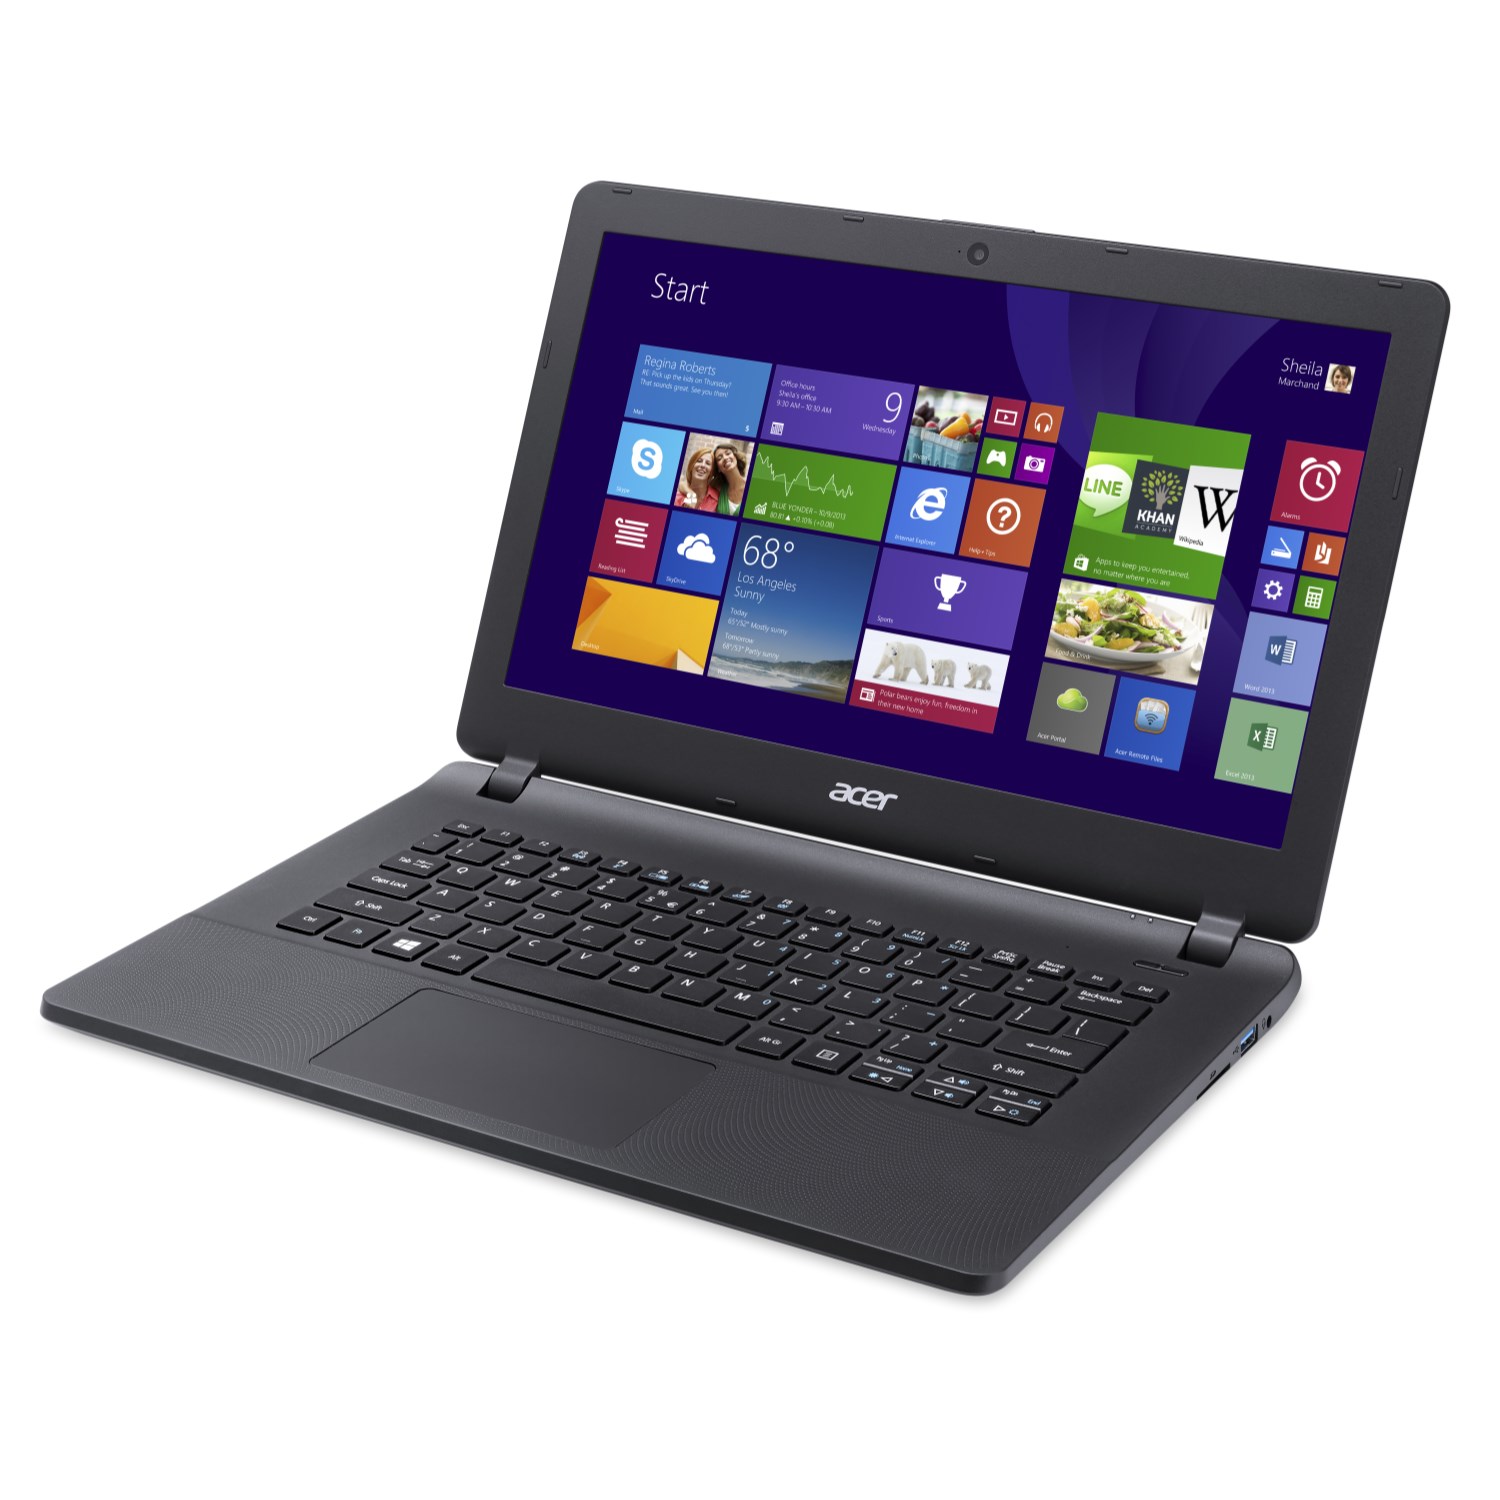 Harga Laptop Acer I7